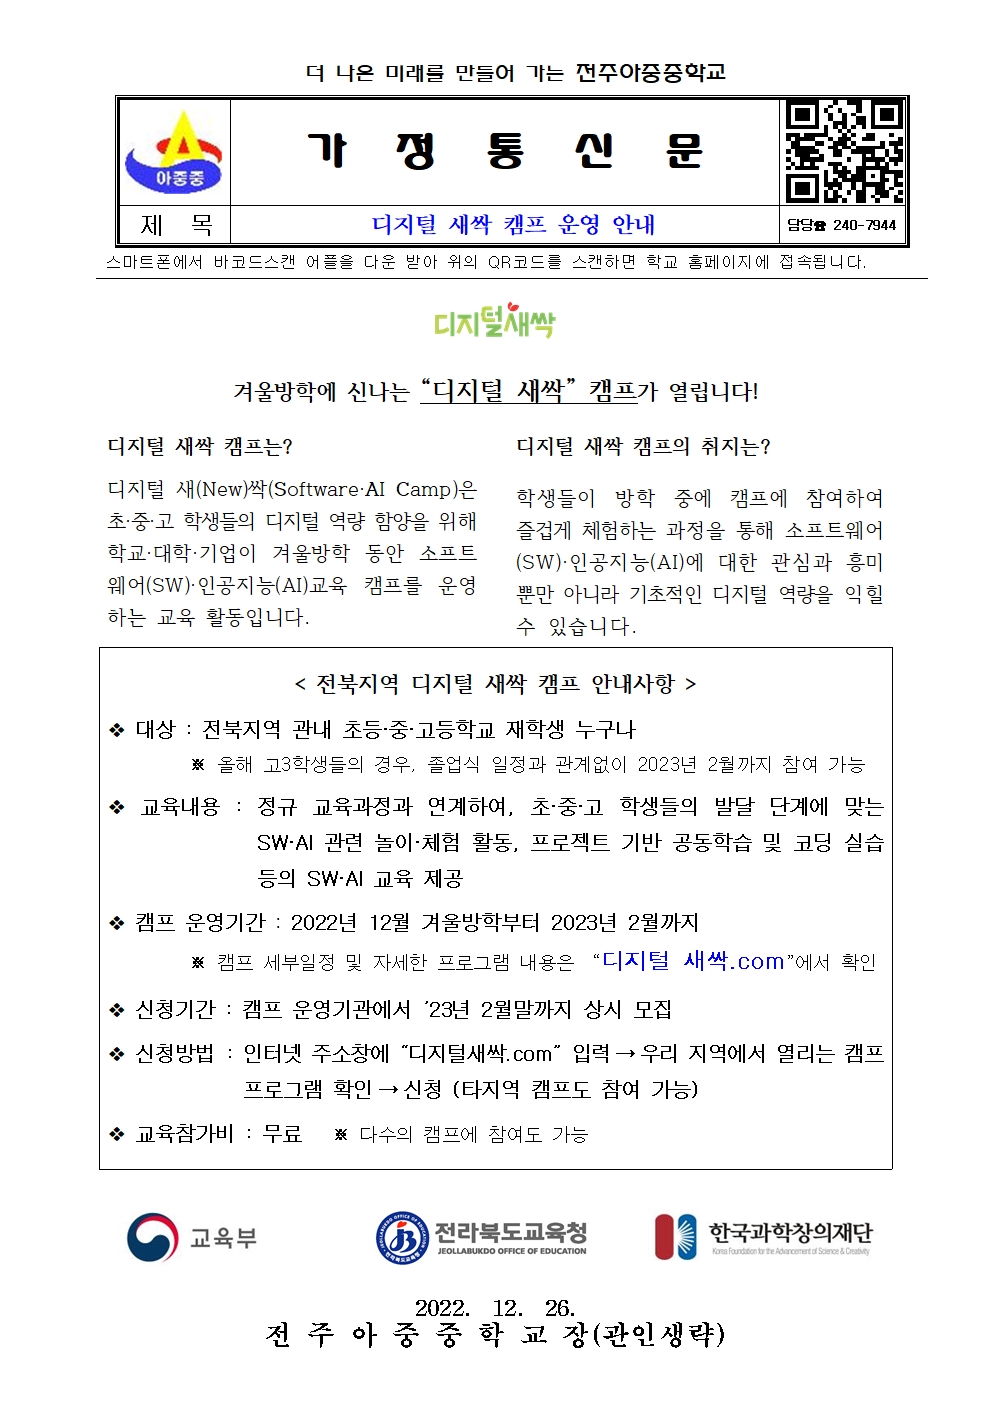 디지털 새싹 캠프 운영 안내 가정통신문001